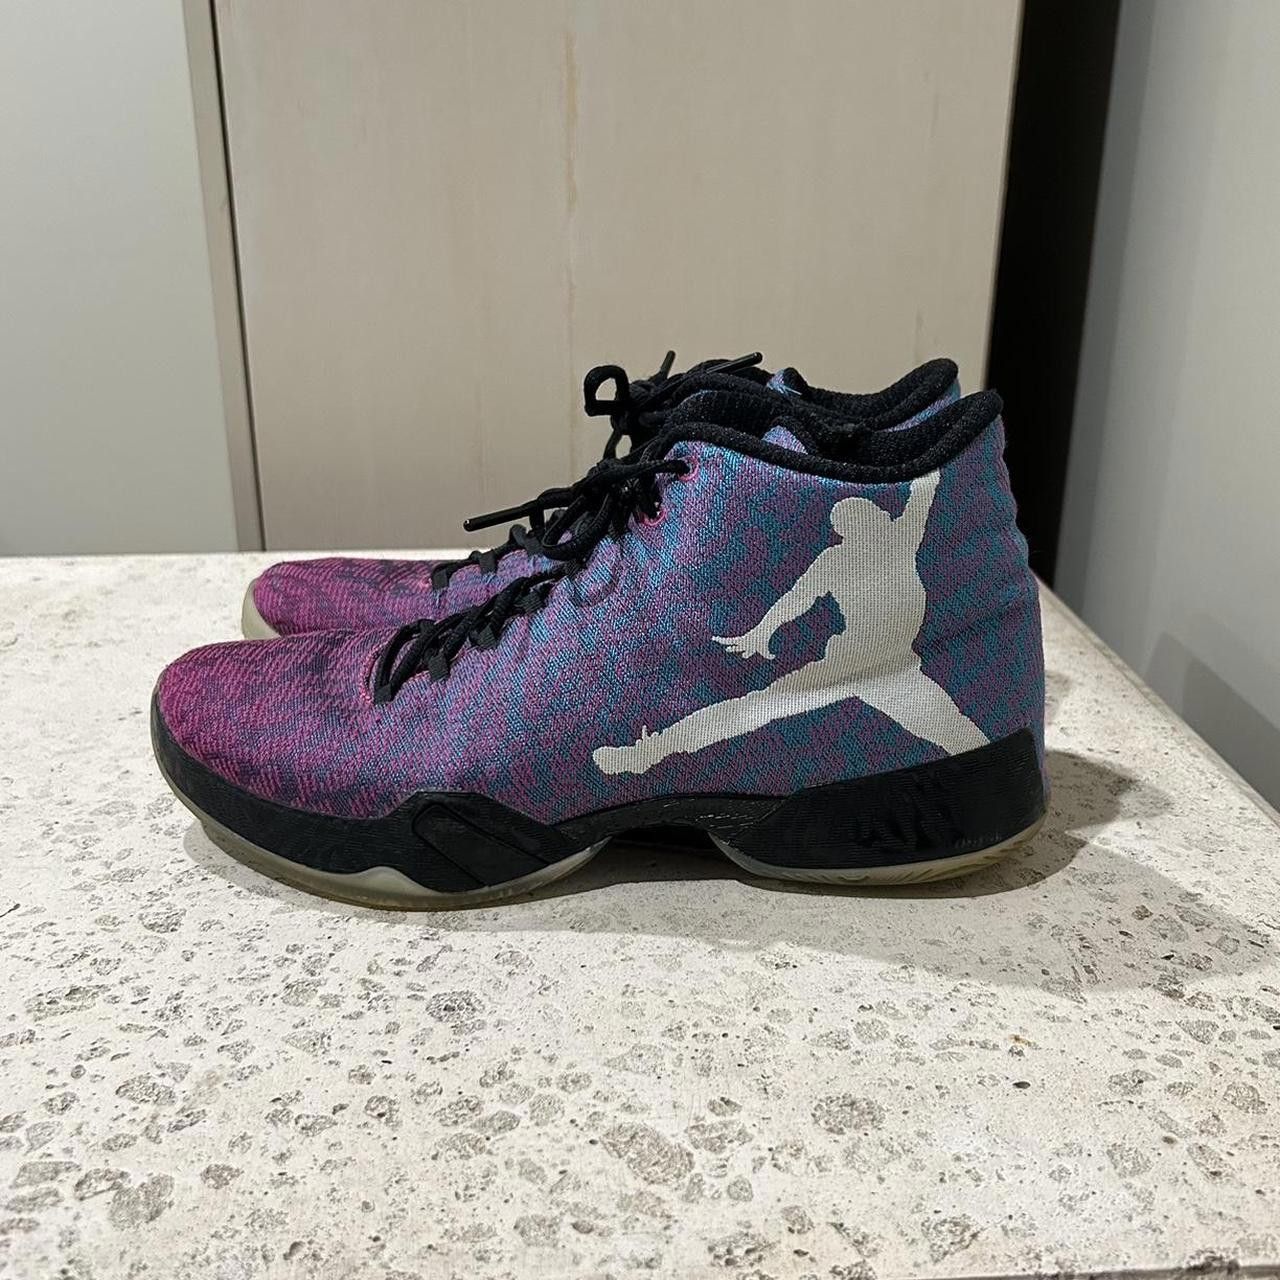 Jordan Brand Air Jordan 29 Riverwalk Basketball Shoes | Grailed